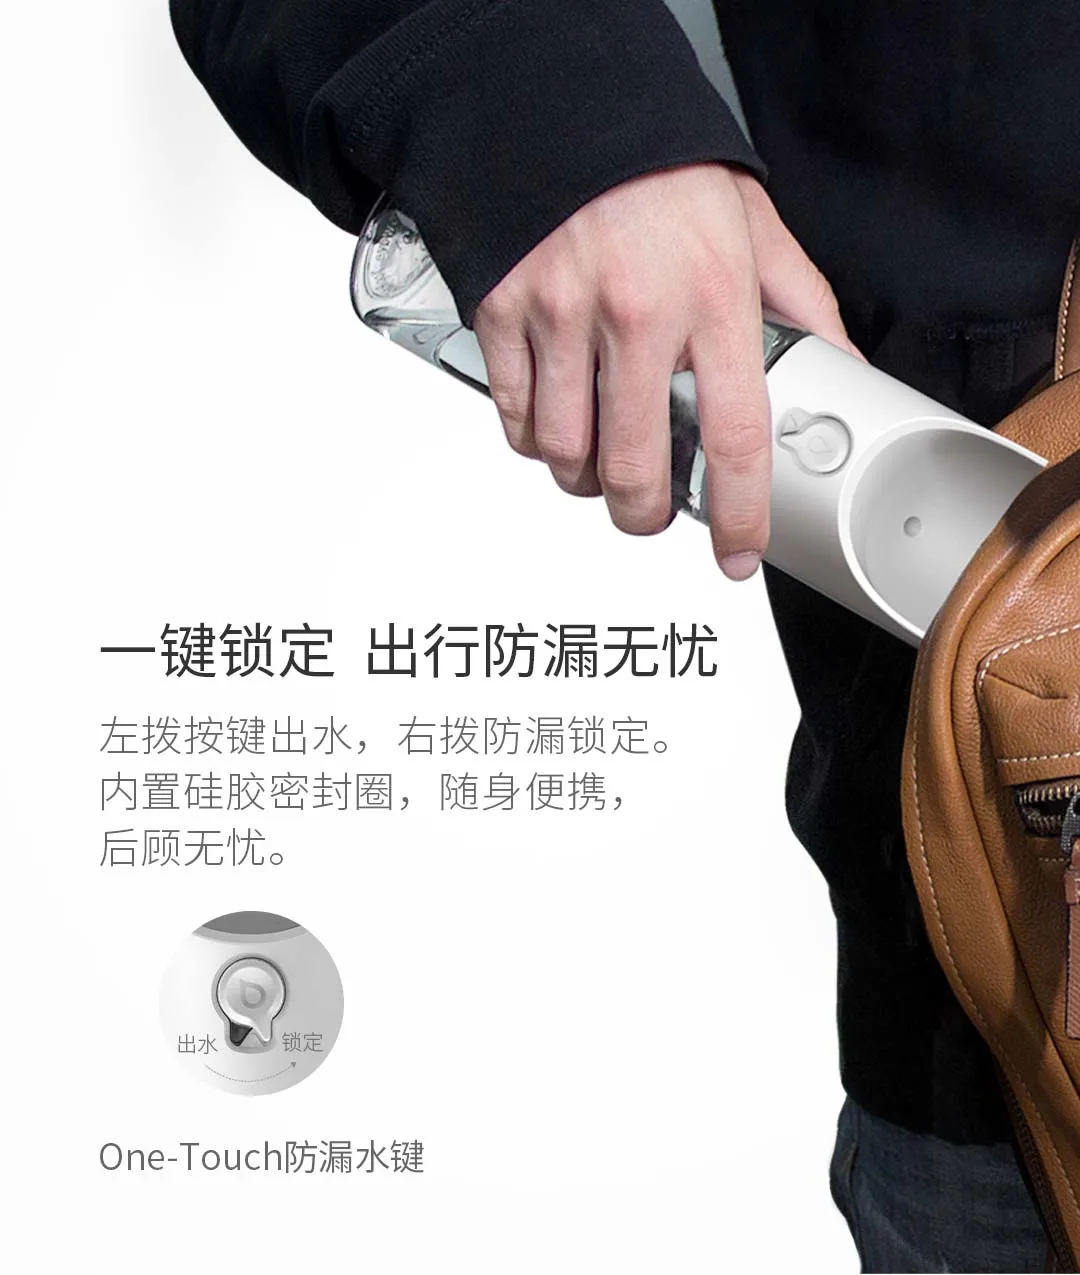 Комплект домашних животных Xiaomi PetKit комплект чашек белого цвета с одной рукой нажатие воды одной кнопкой